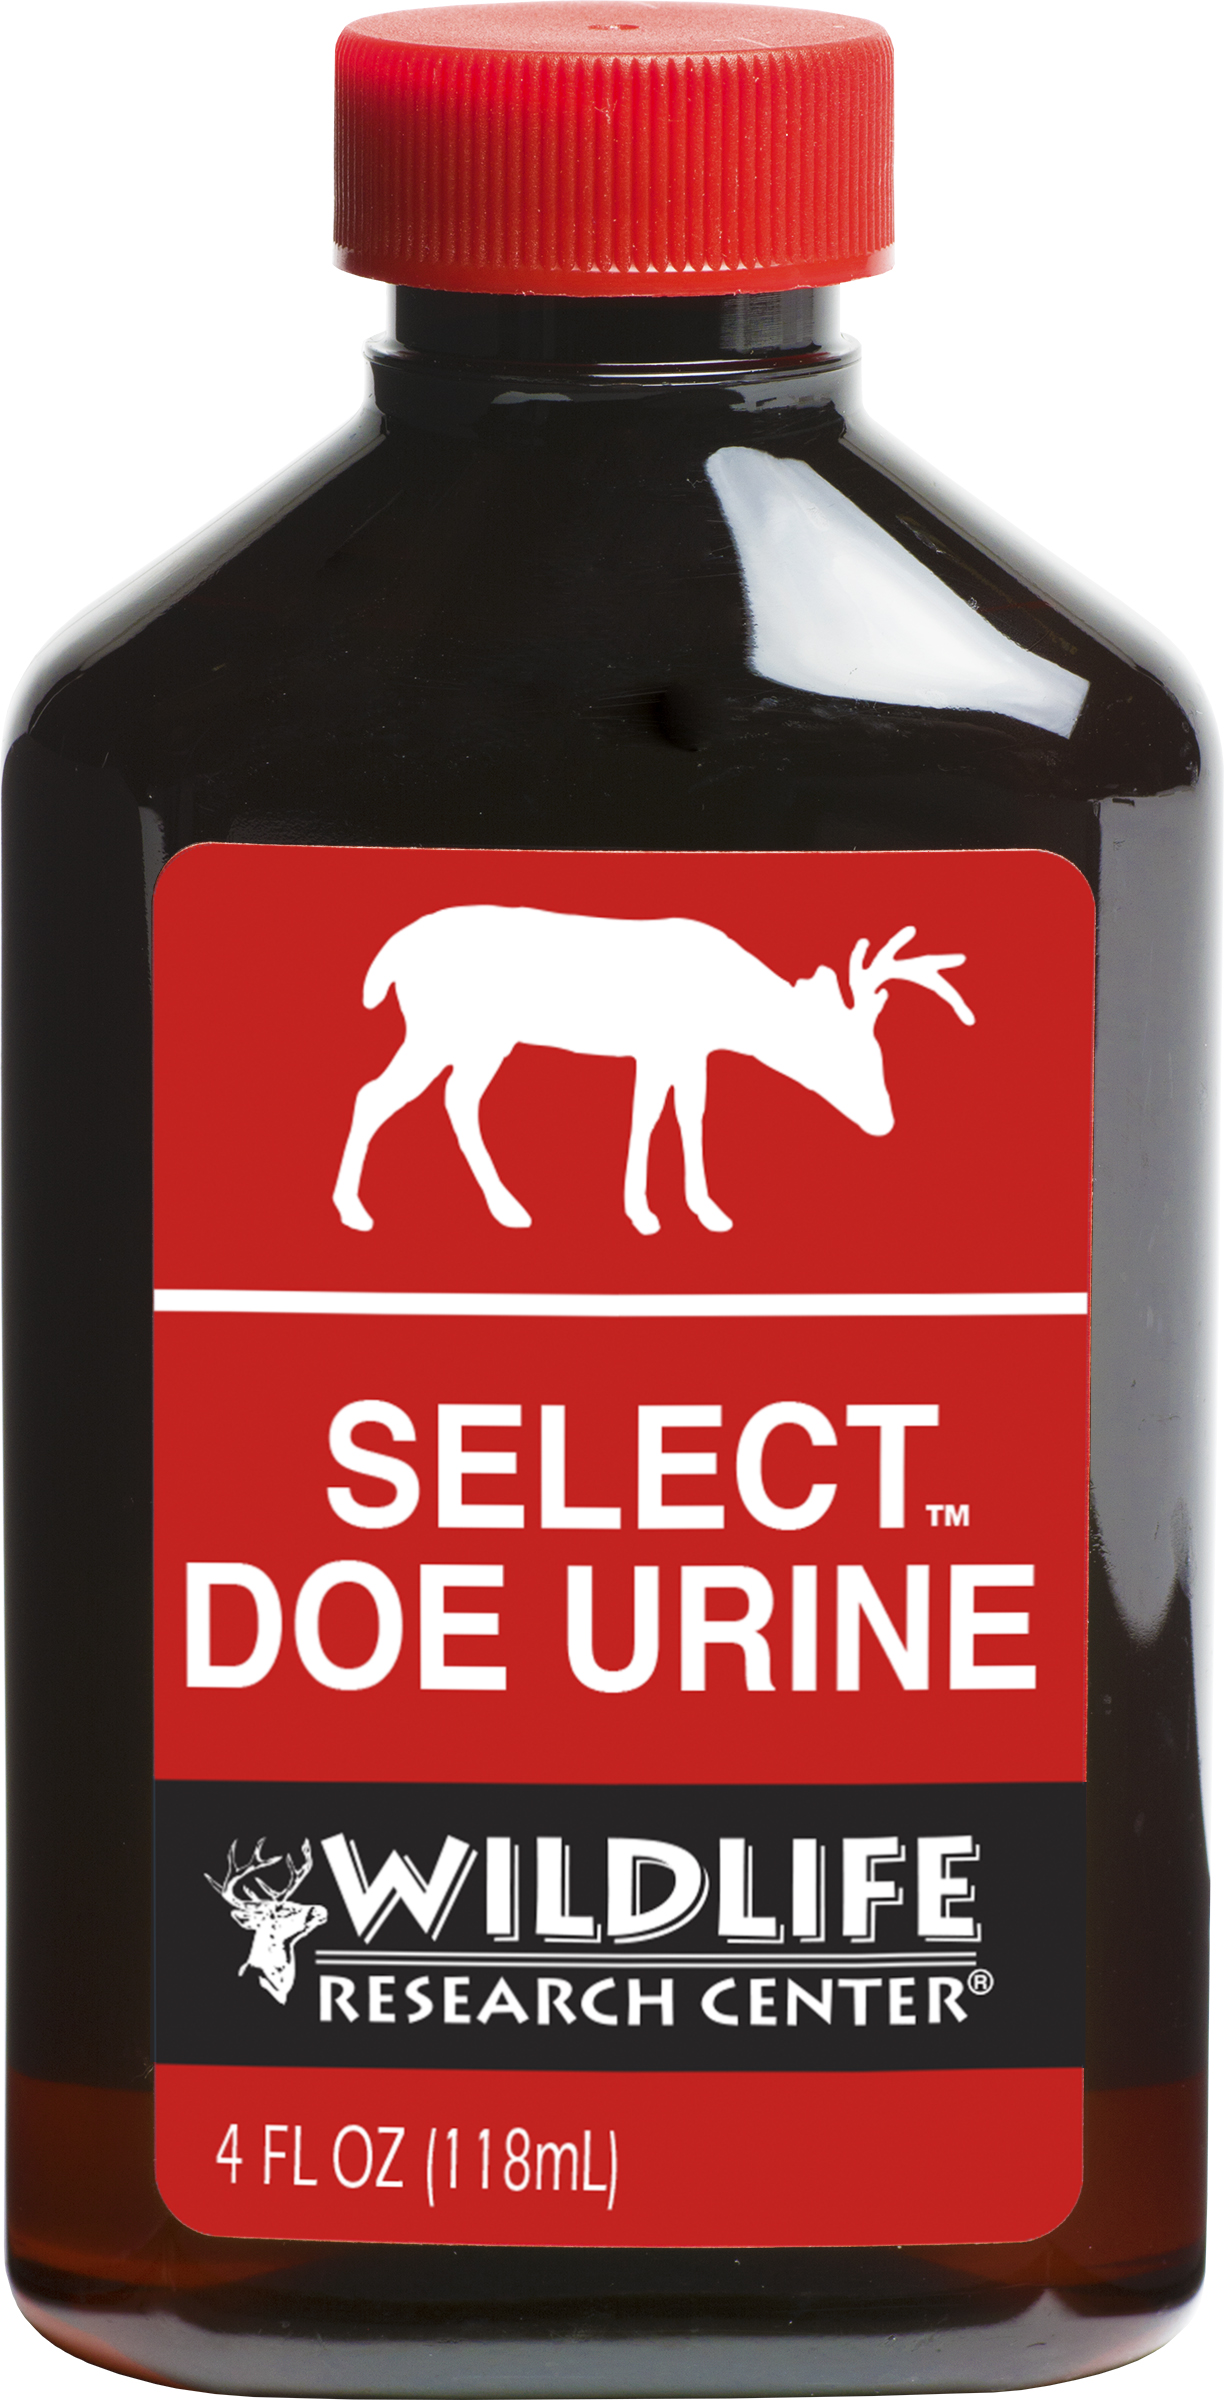 Select Doe Urine